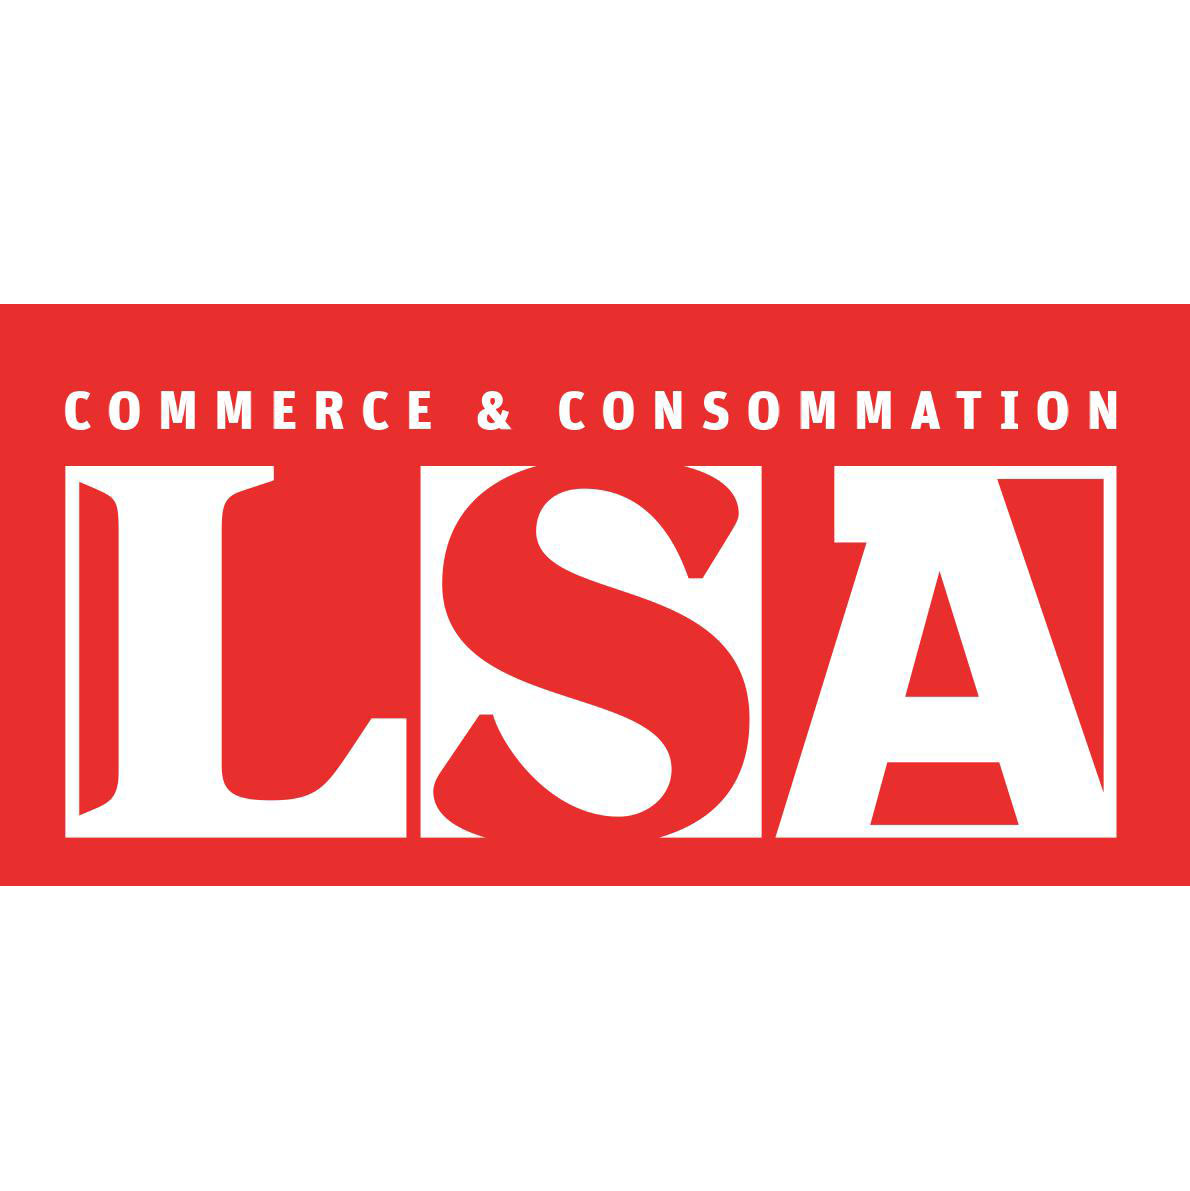 La franchise capitalistique (LSA, juin 2014)